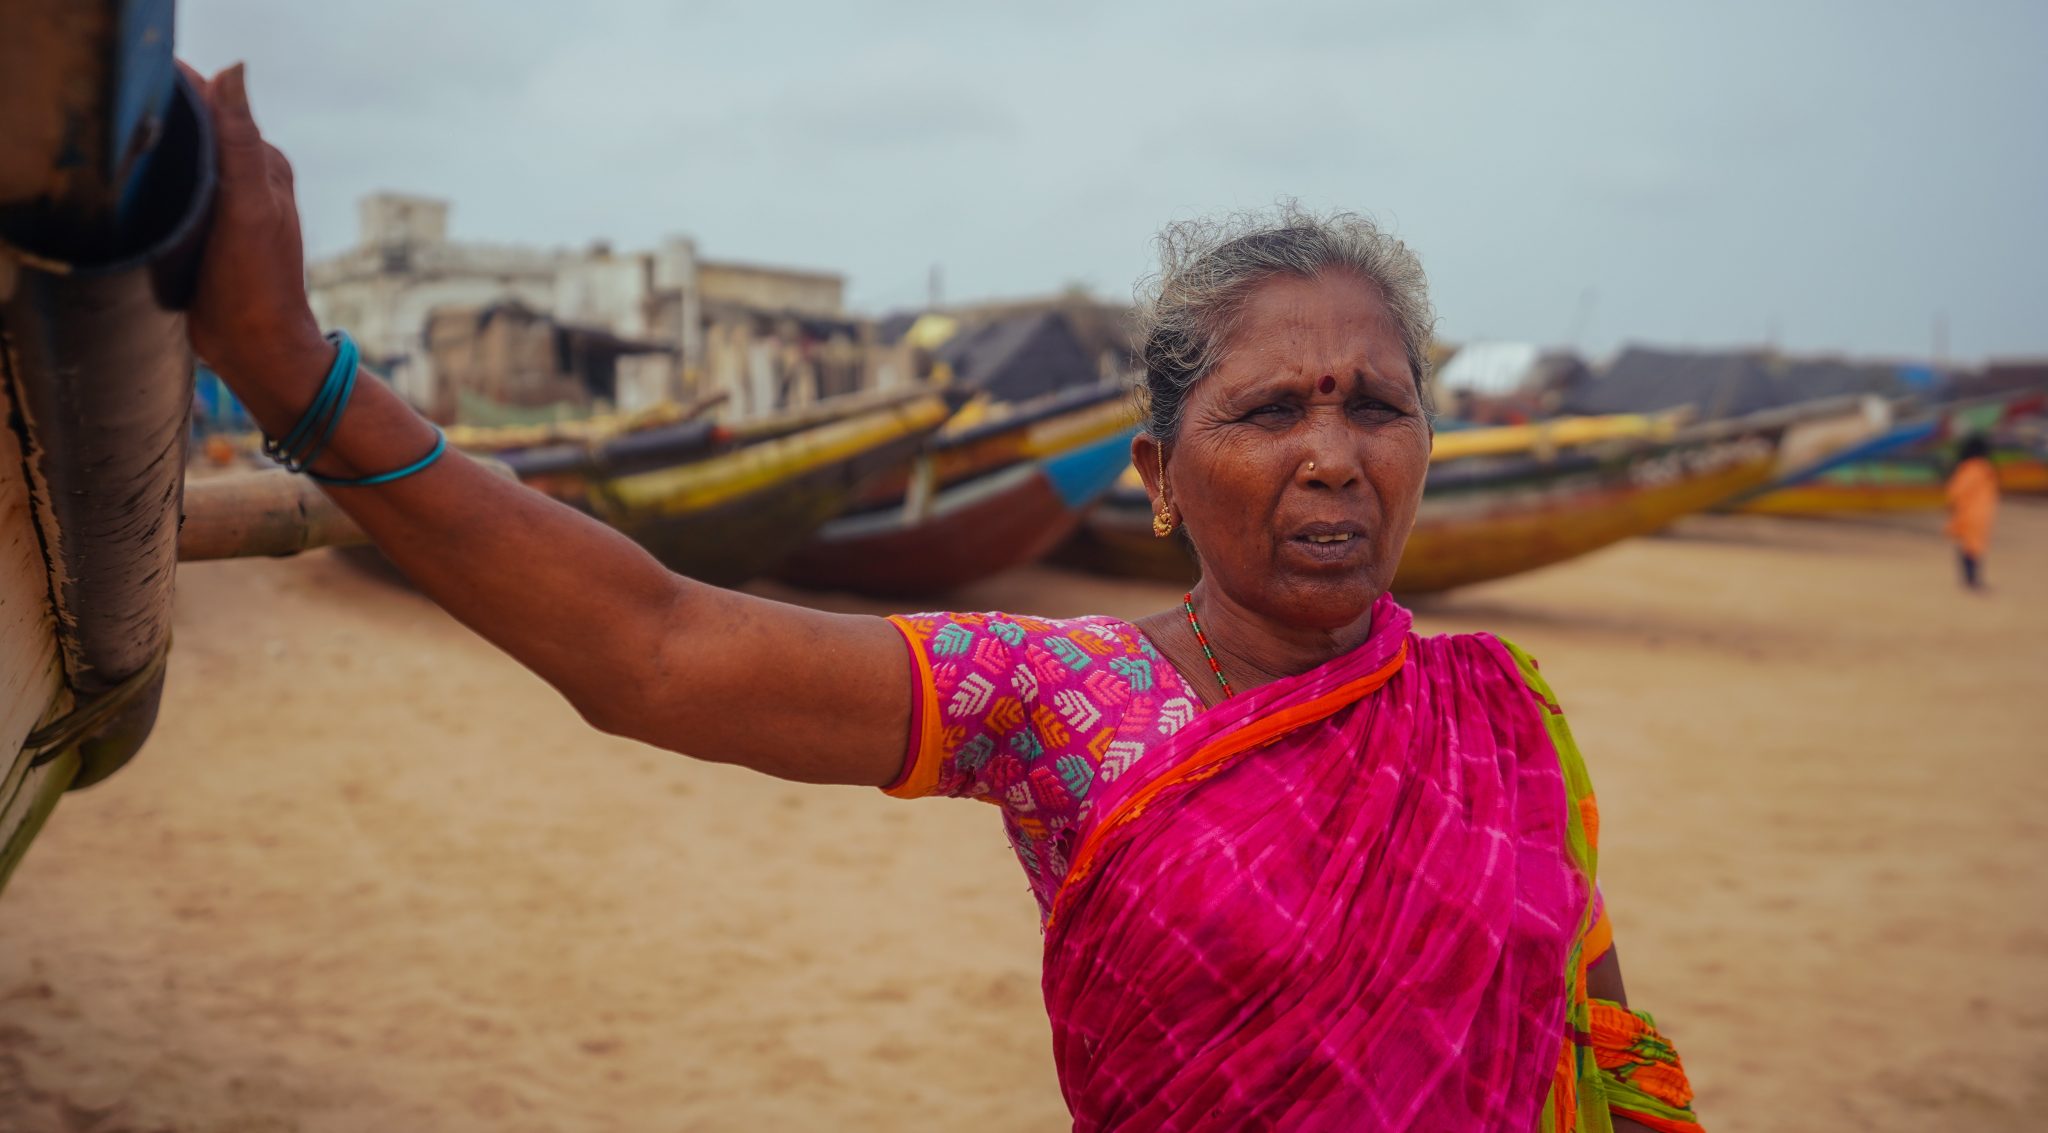 Una anciana viste un sari rosa brillante en la playa con barcos de pesca en el fondo